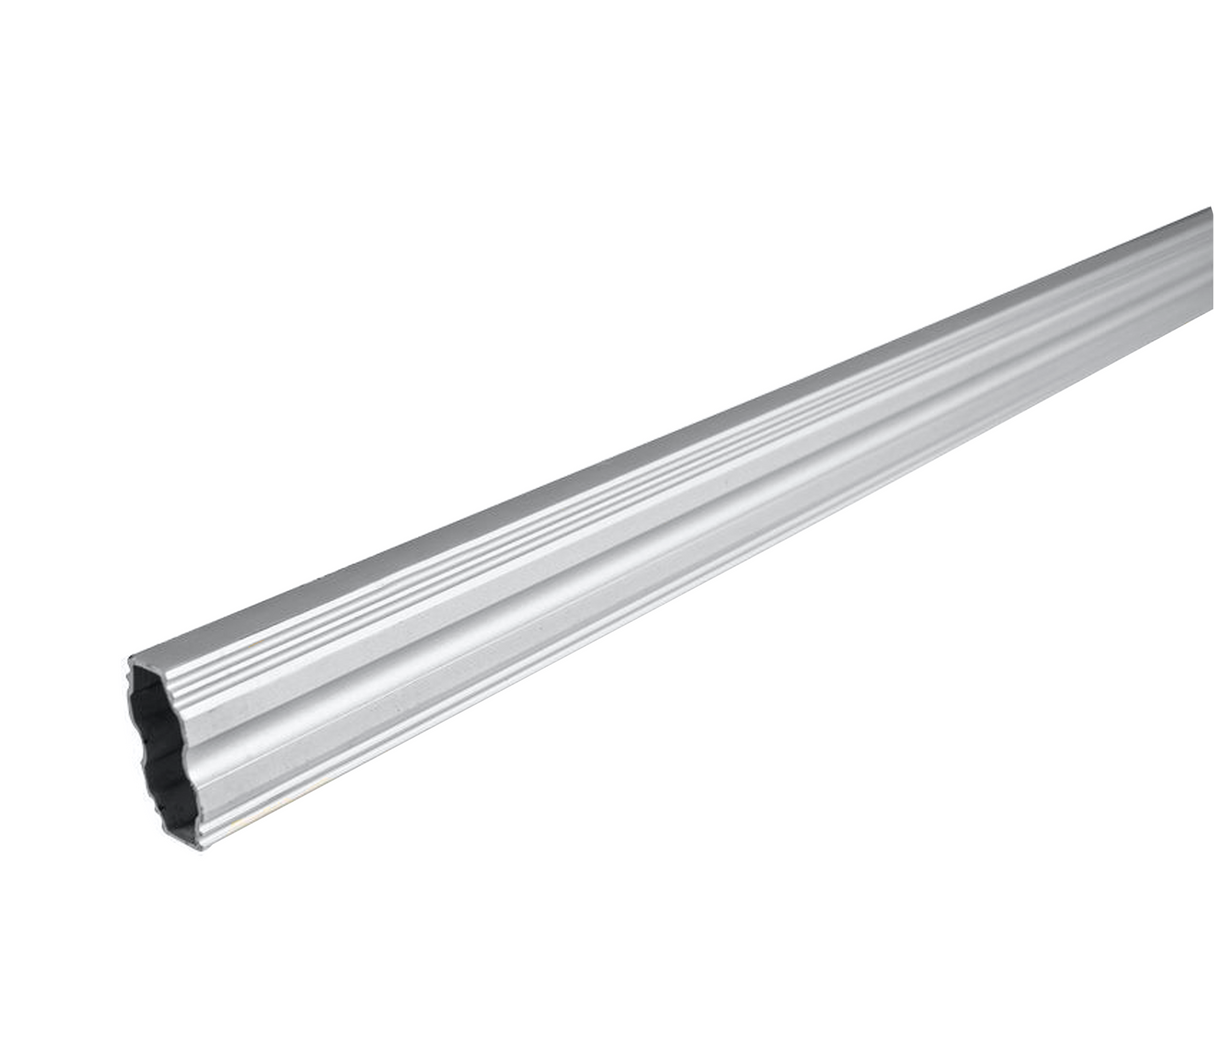 Tubo prisma aluminio mate 14x30mm x 1.5m Tauro